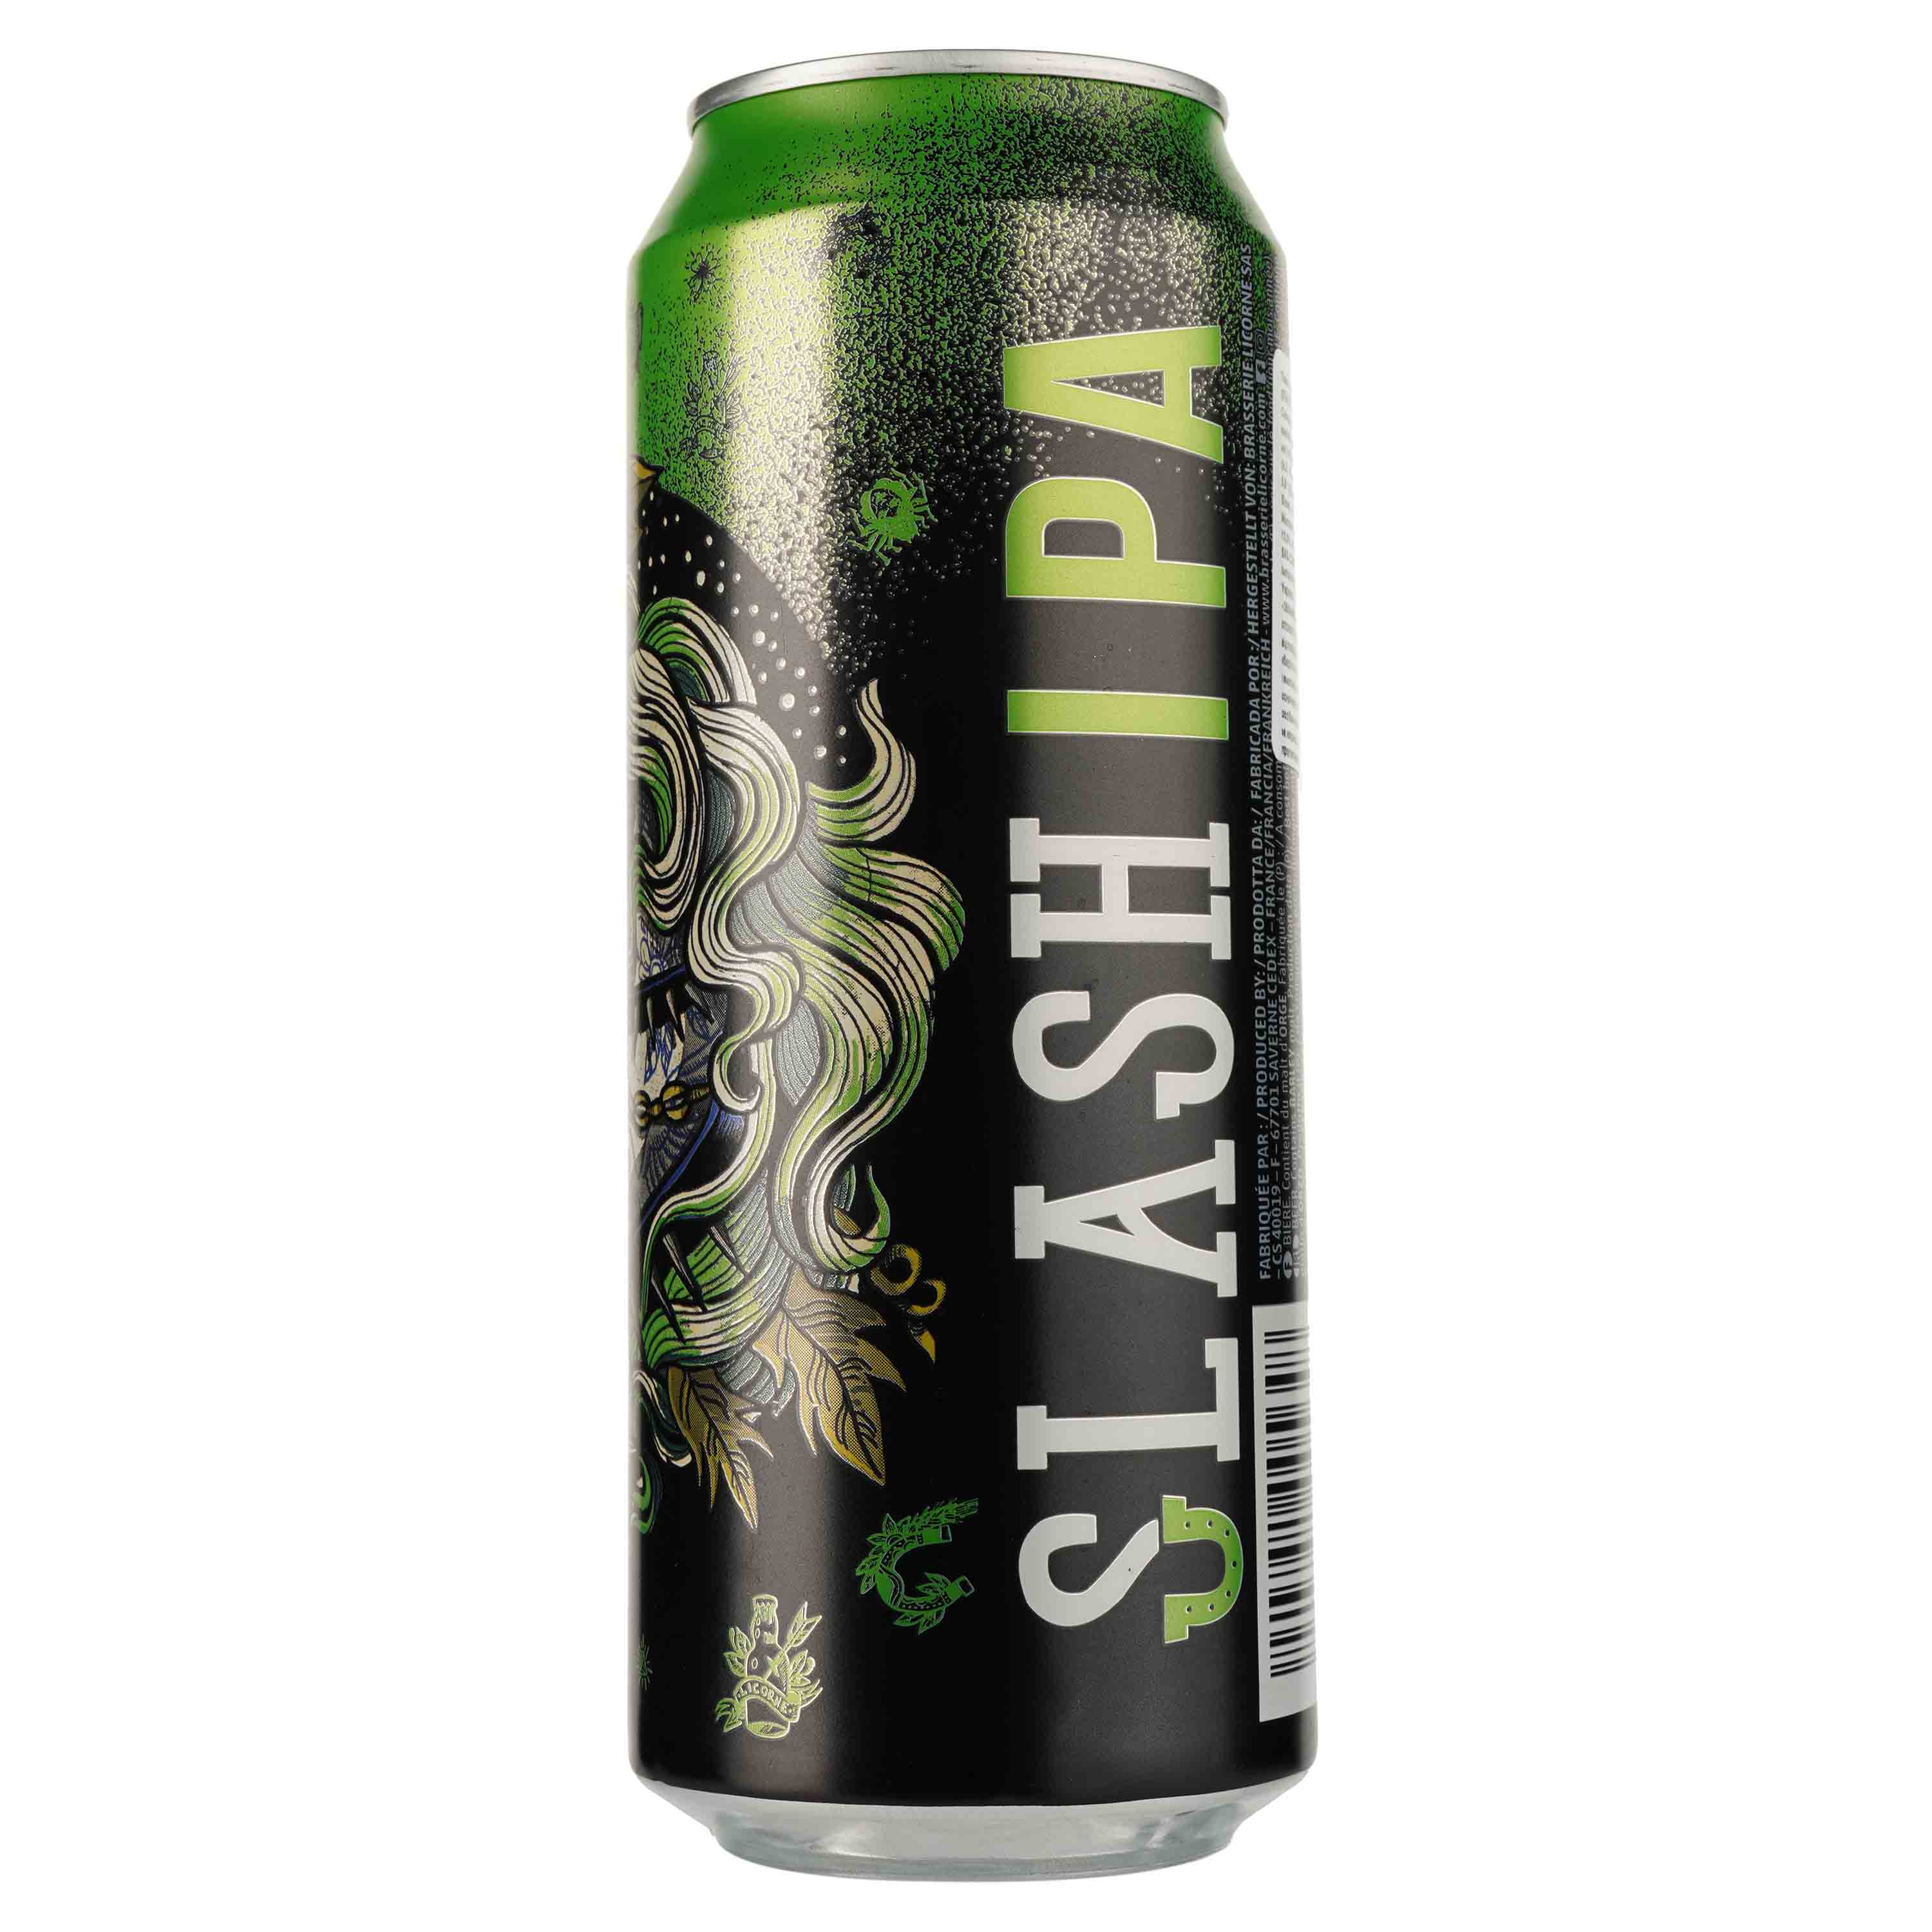 Пиво Slash IPA светлое, 5.9%, ж/б, 0.5 л - фото 2